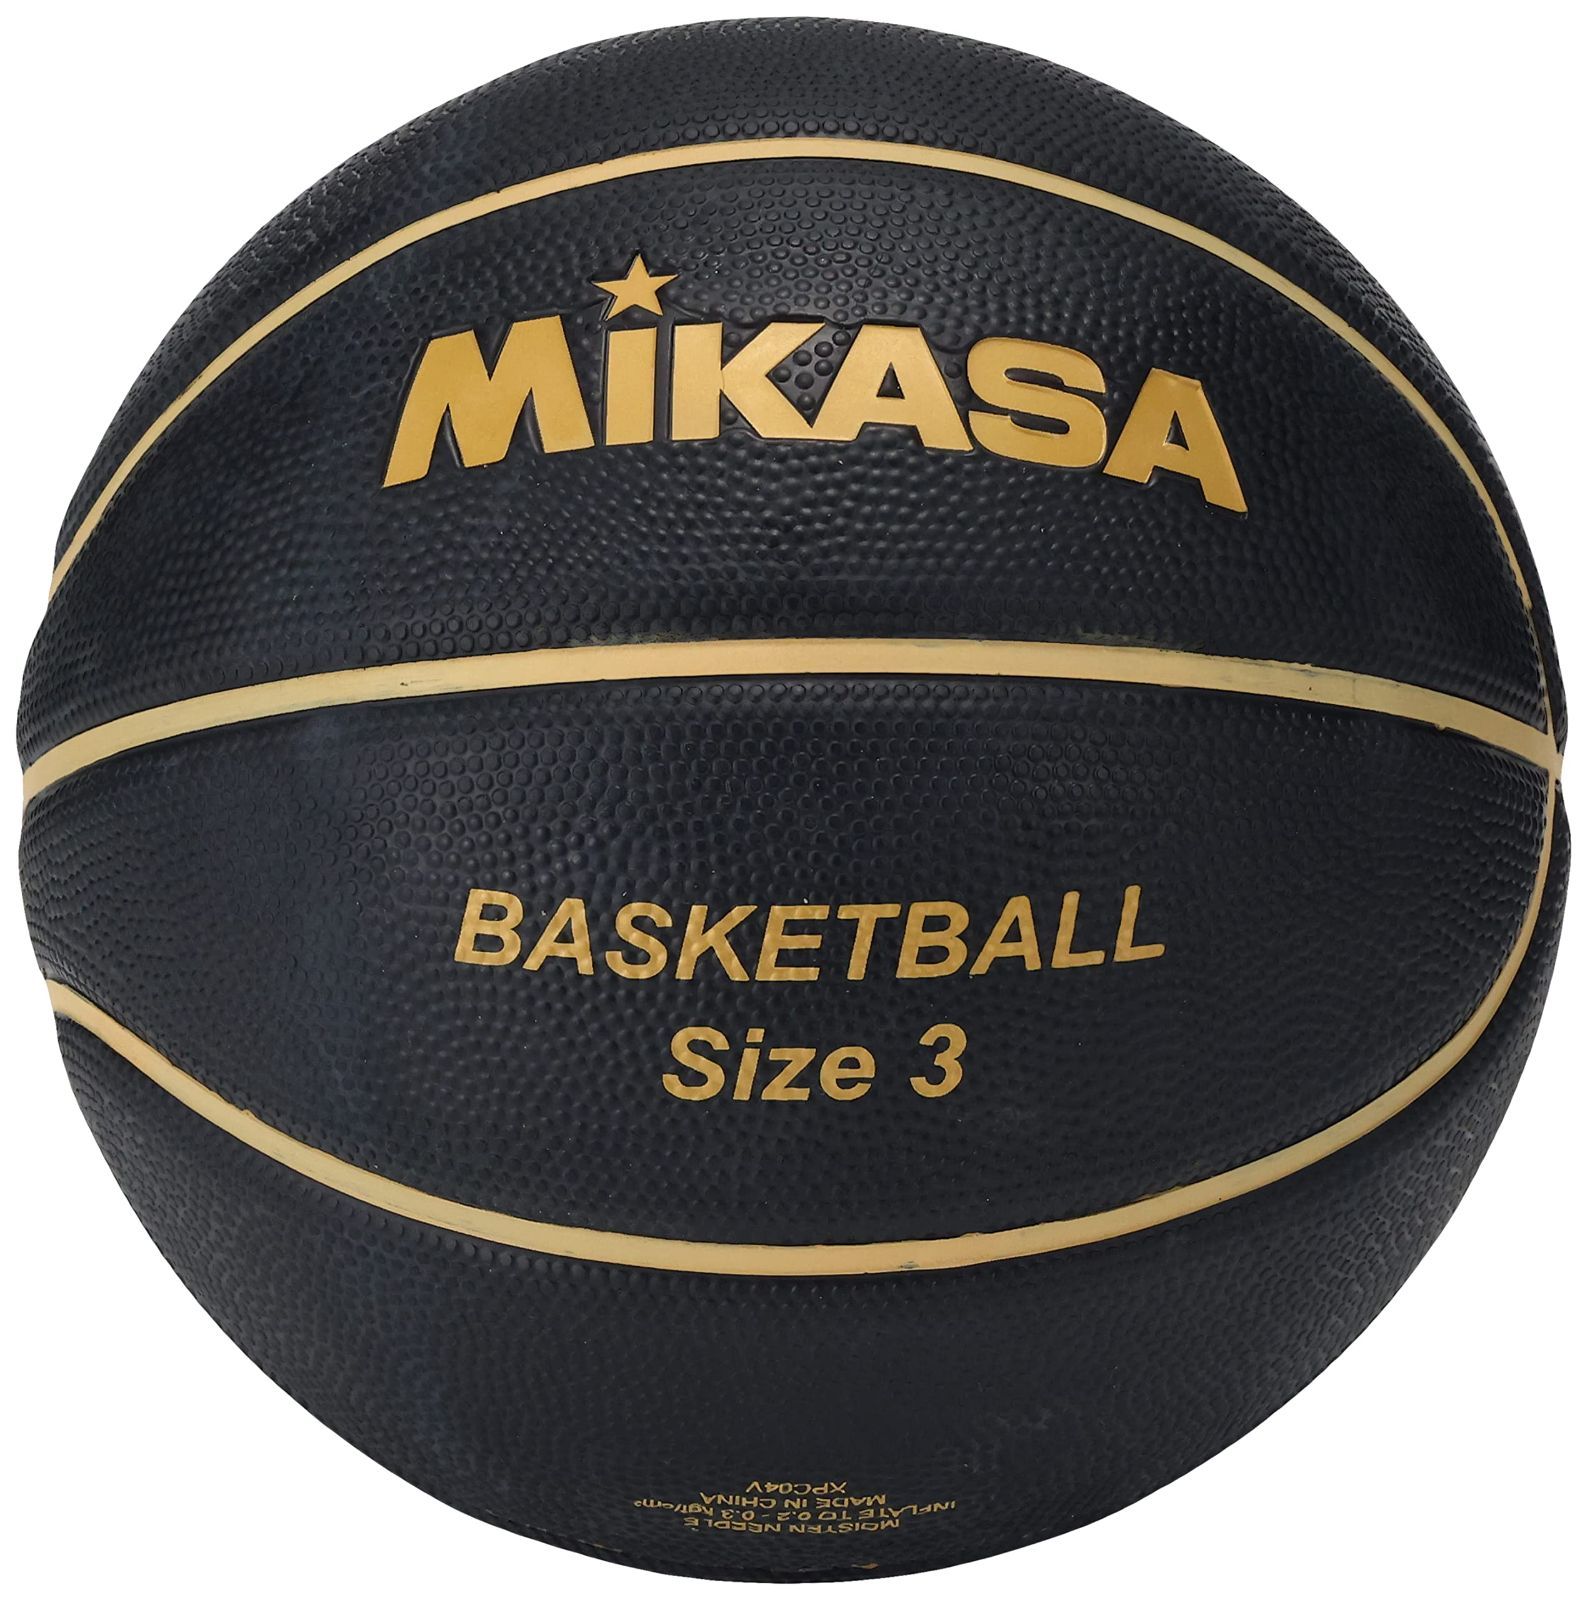 色: ブラック/ゴールド】ミカサMIKASA バスケットボール 3号ジュニア